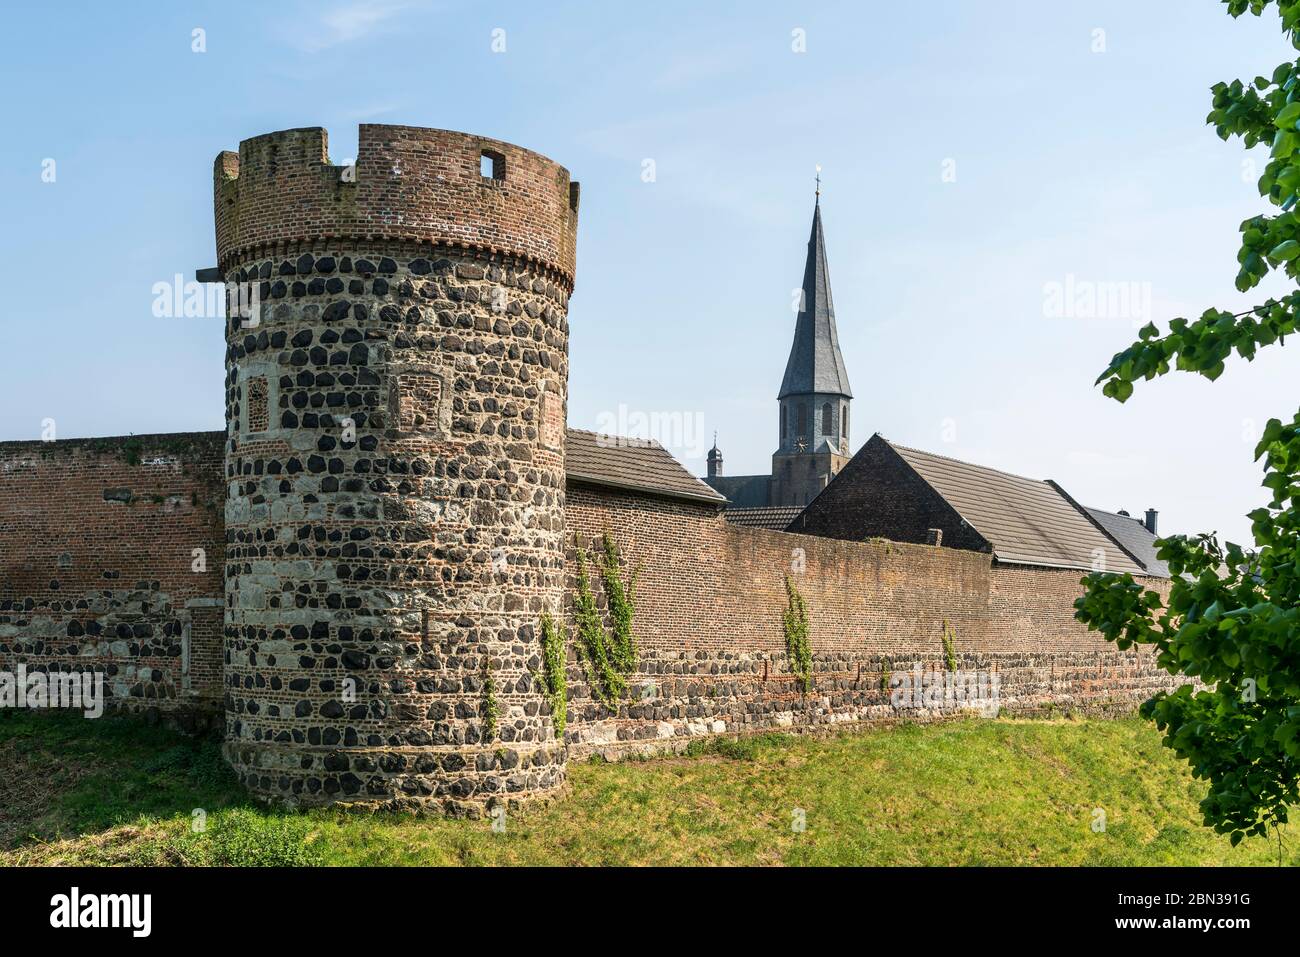 Stadtmauer, Krötschenturm und Pfarrkirche St. Martinus in der Stadt Zons, Dormagen, Niederrhein,  Nordrhein-Westfalen, Deutschland, Europa |  City wal Stock Photo